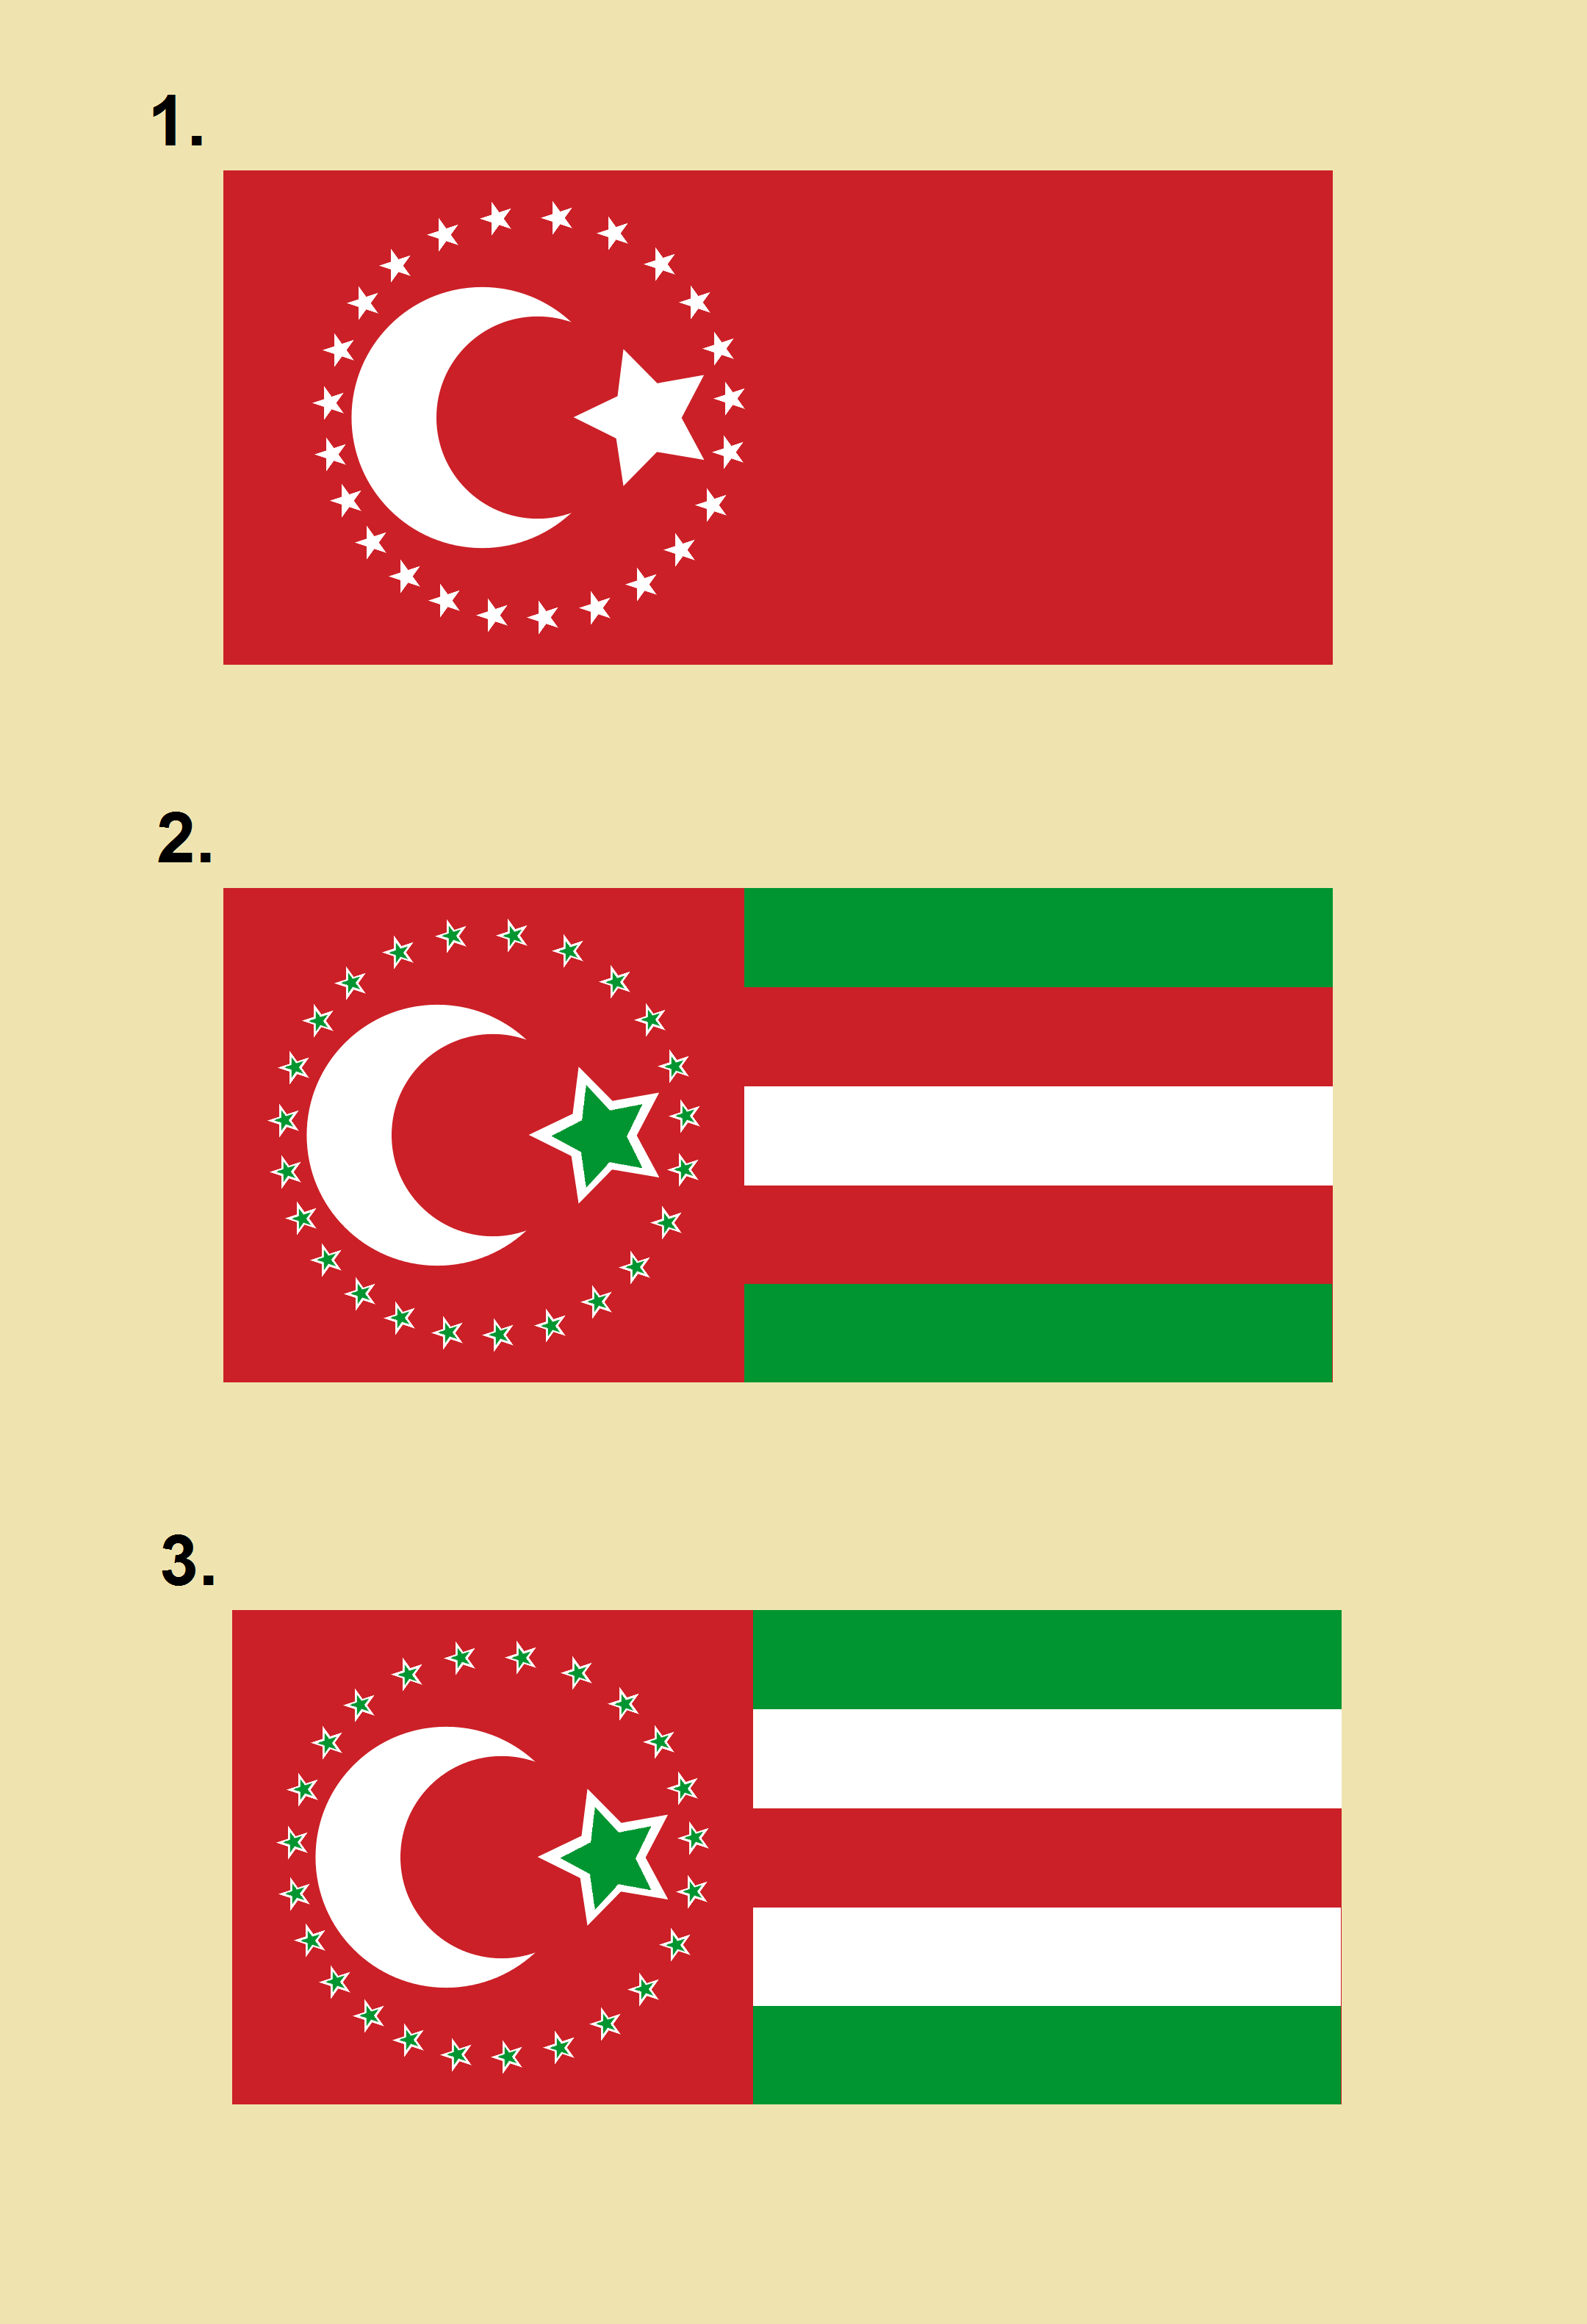 Ottoman_flag2.png